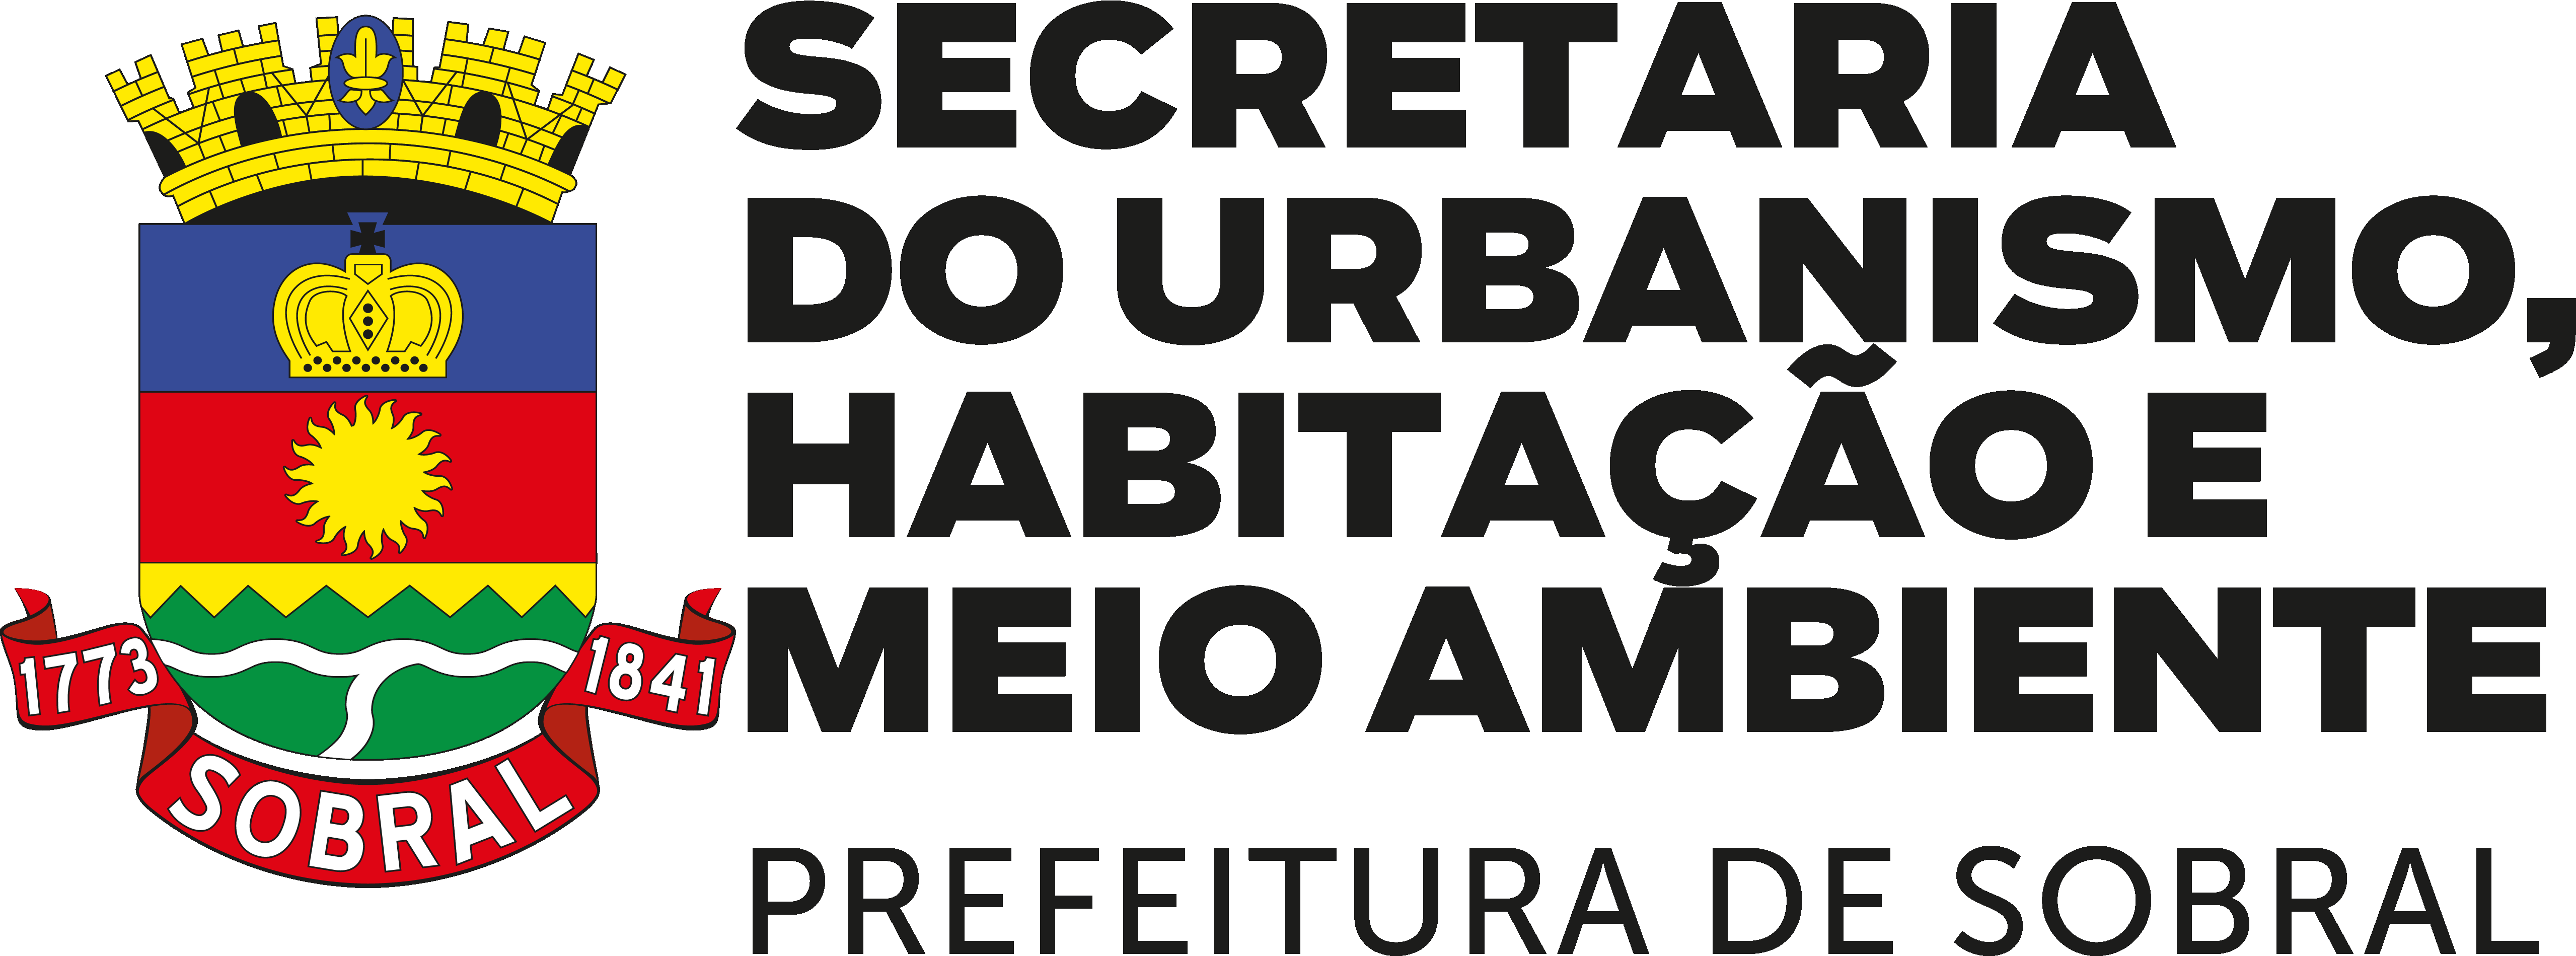 Secretaria do Urbanismo, Habitação e Meio Ambiente de Sobral